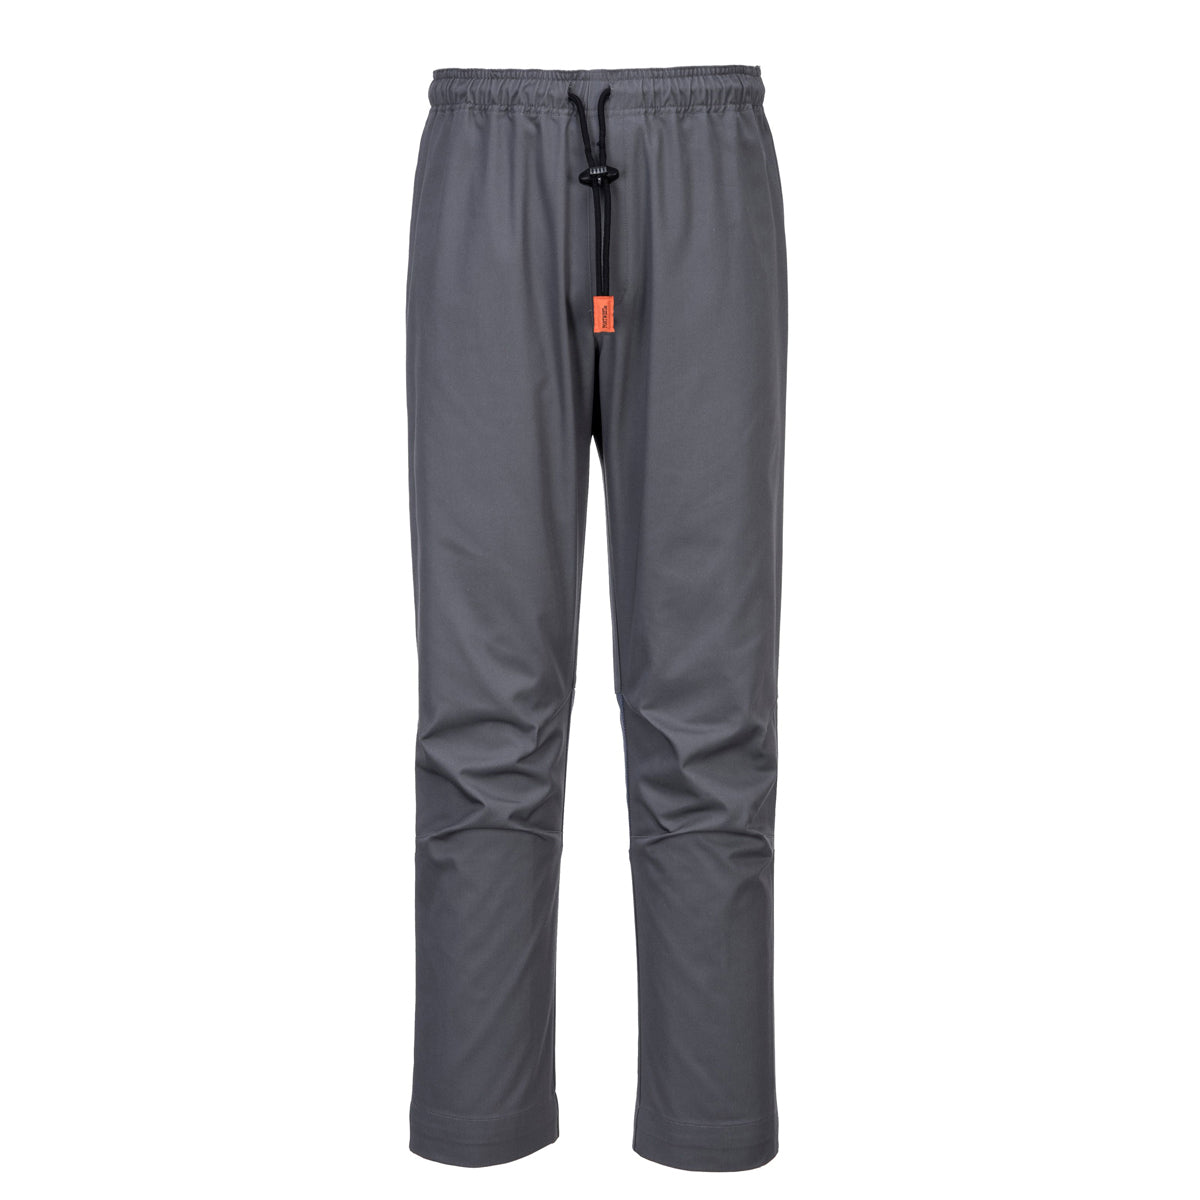 MeshAir Pro bukser med taljebånd - Grå - Størrelse: 3XL